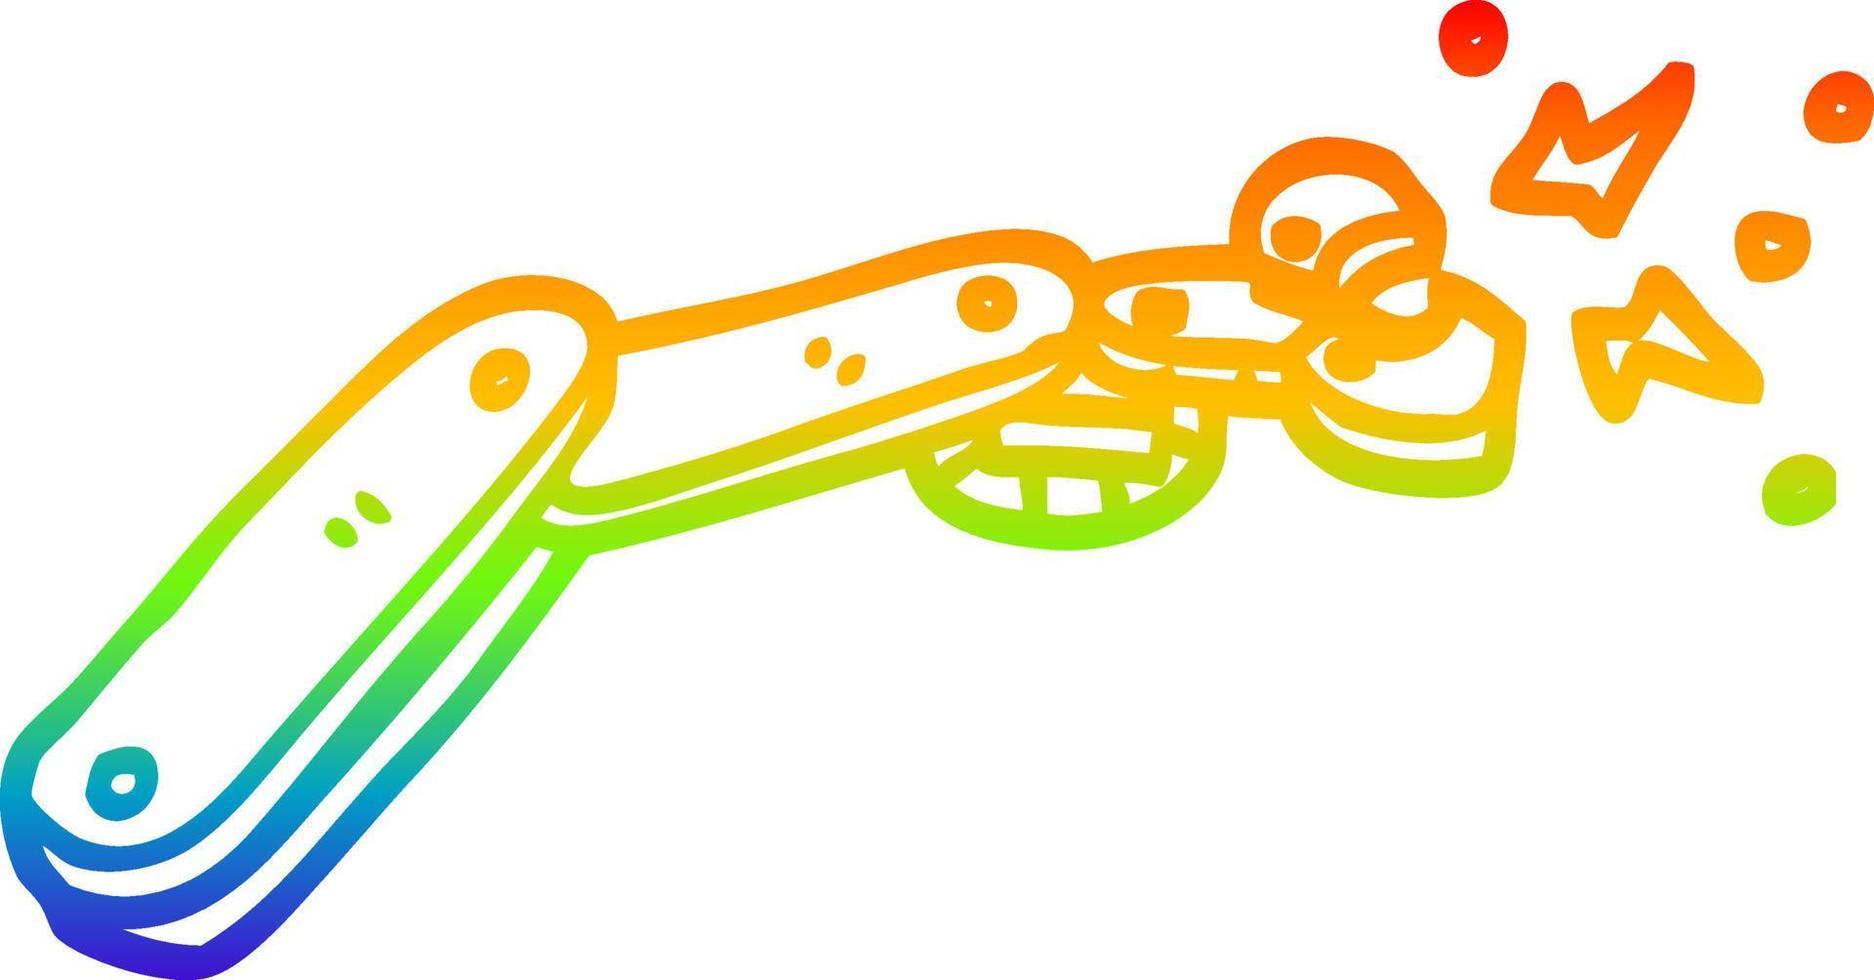 braccio del robot del fumetto del disegno della linea del gradiente dell'arcobaleno vettore